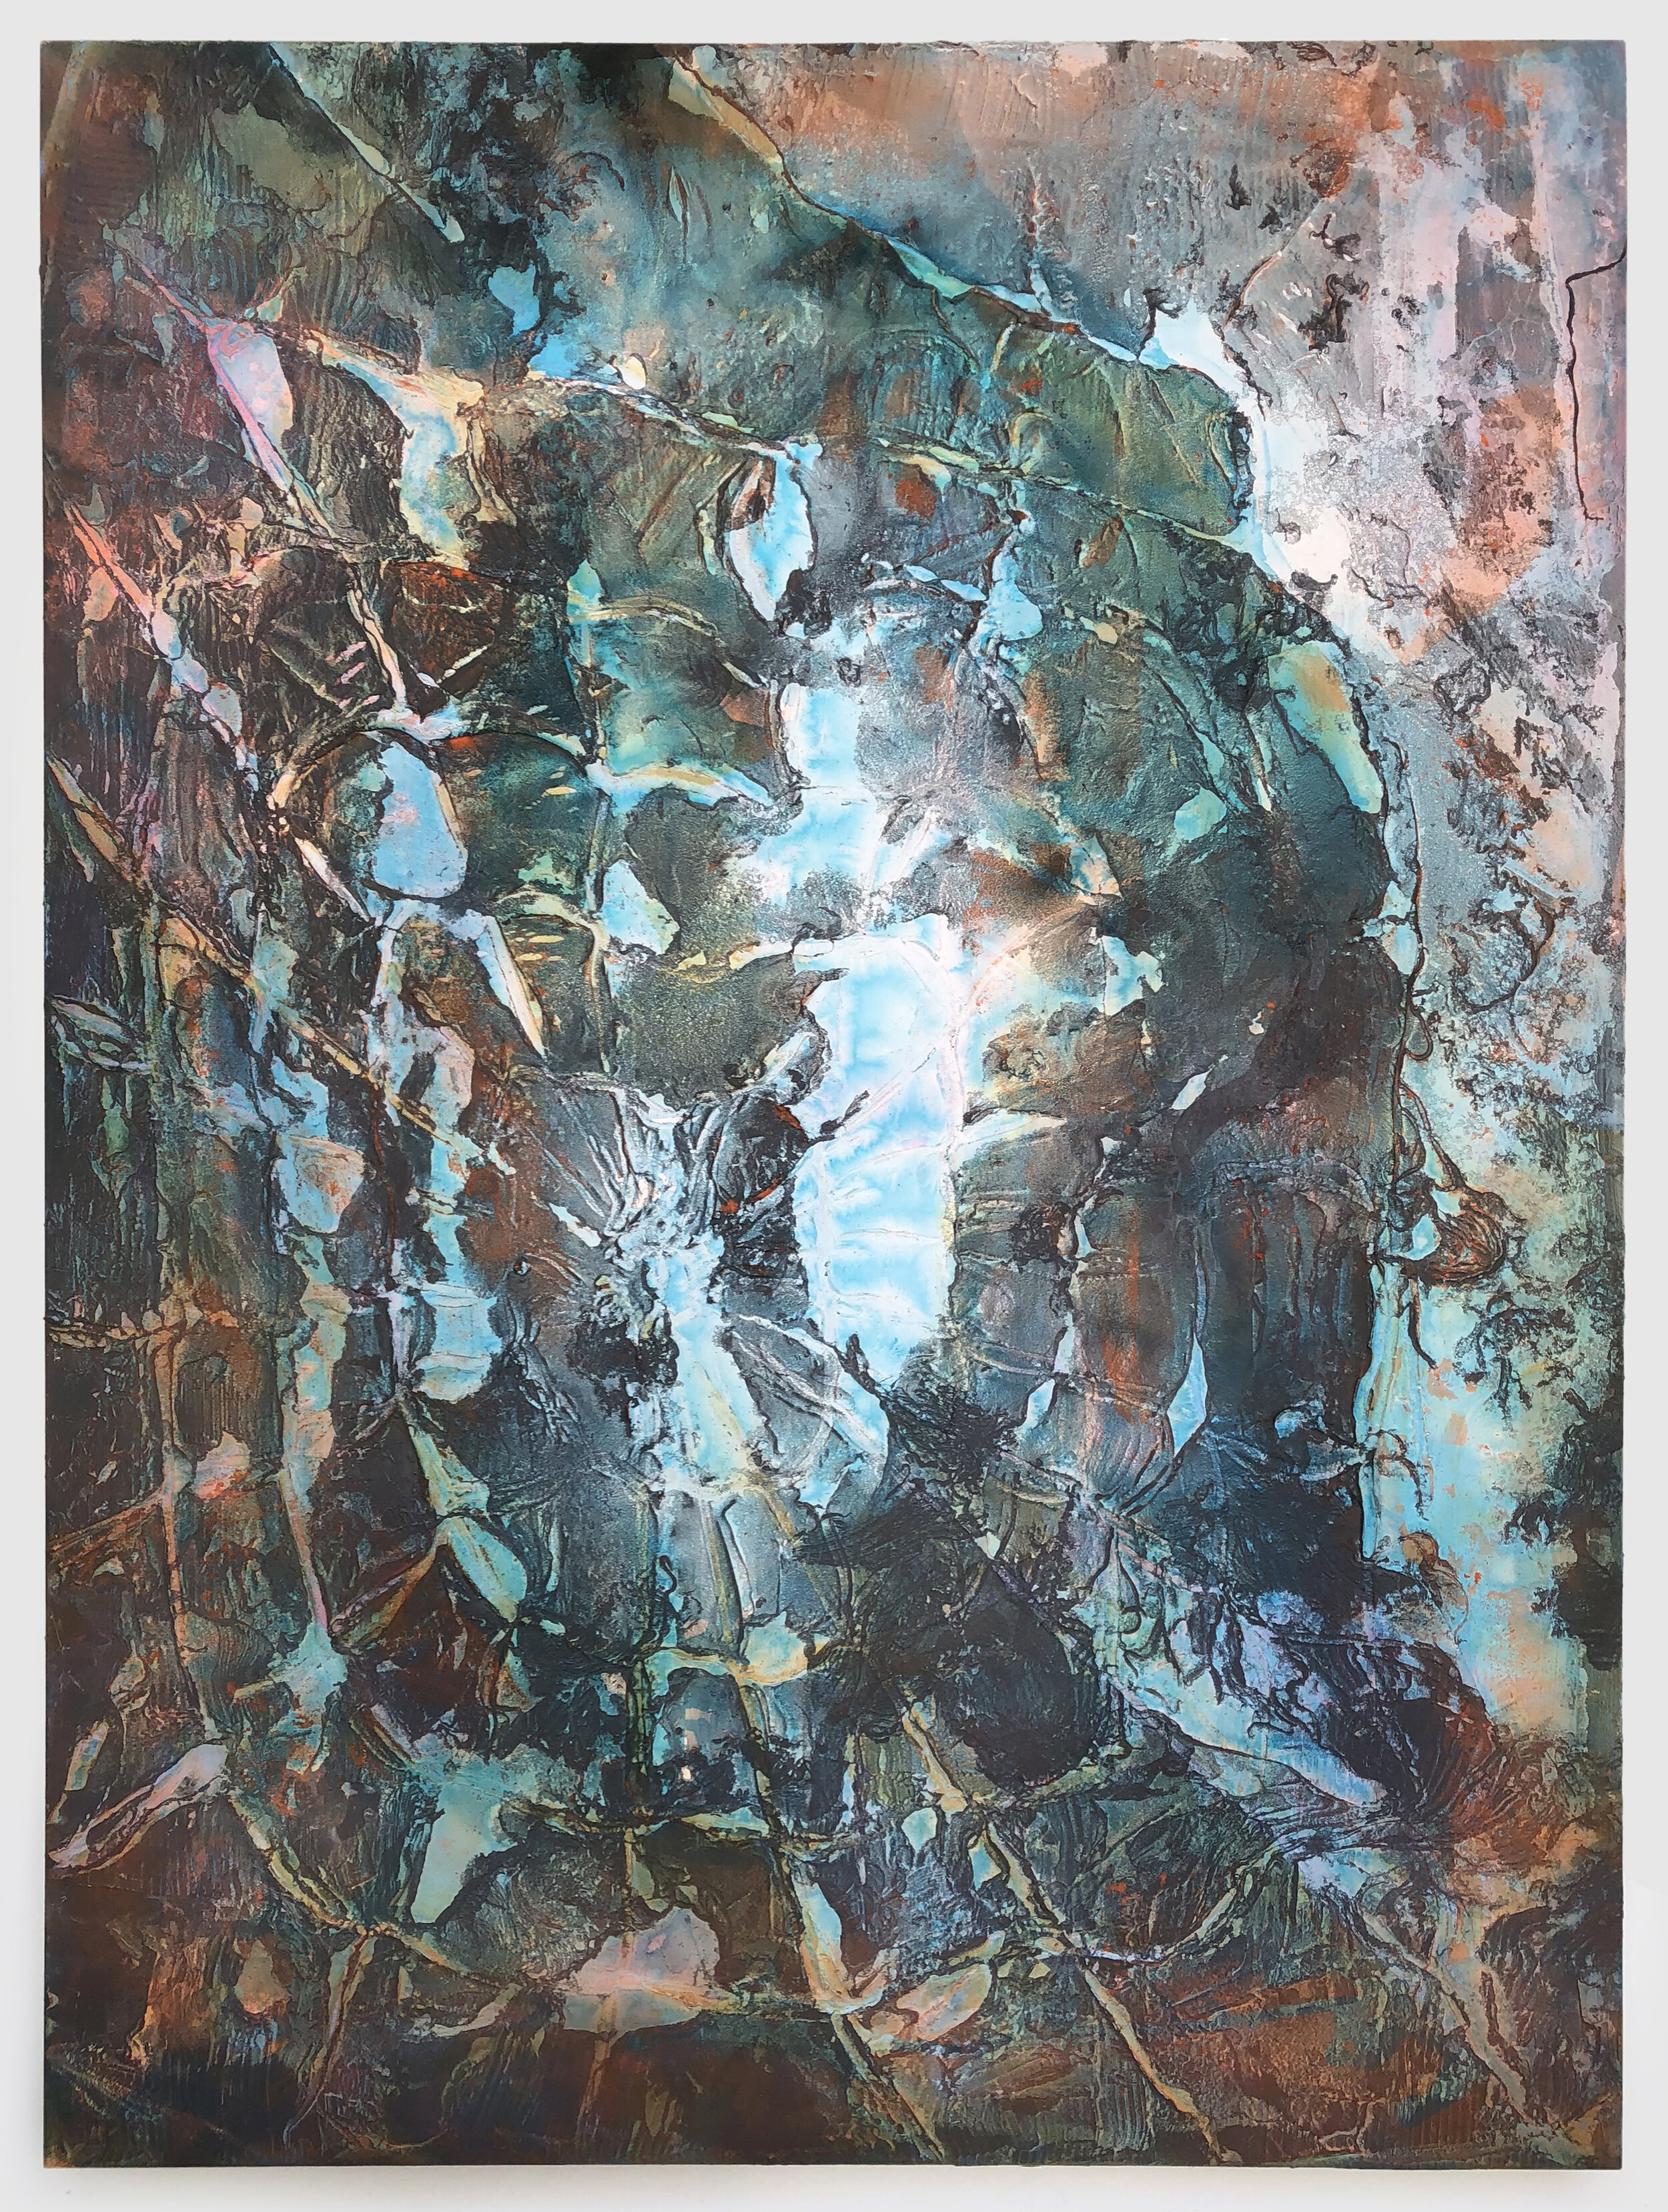   New Sun (Blue) , 2019  acrylic and enamel on canvas  72” x 54” 